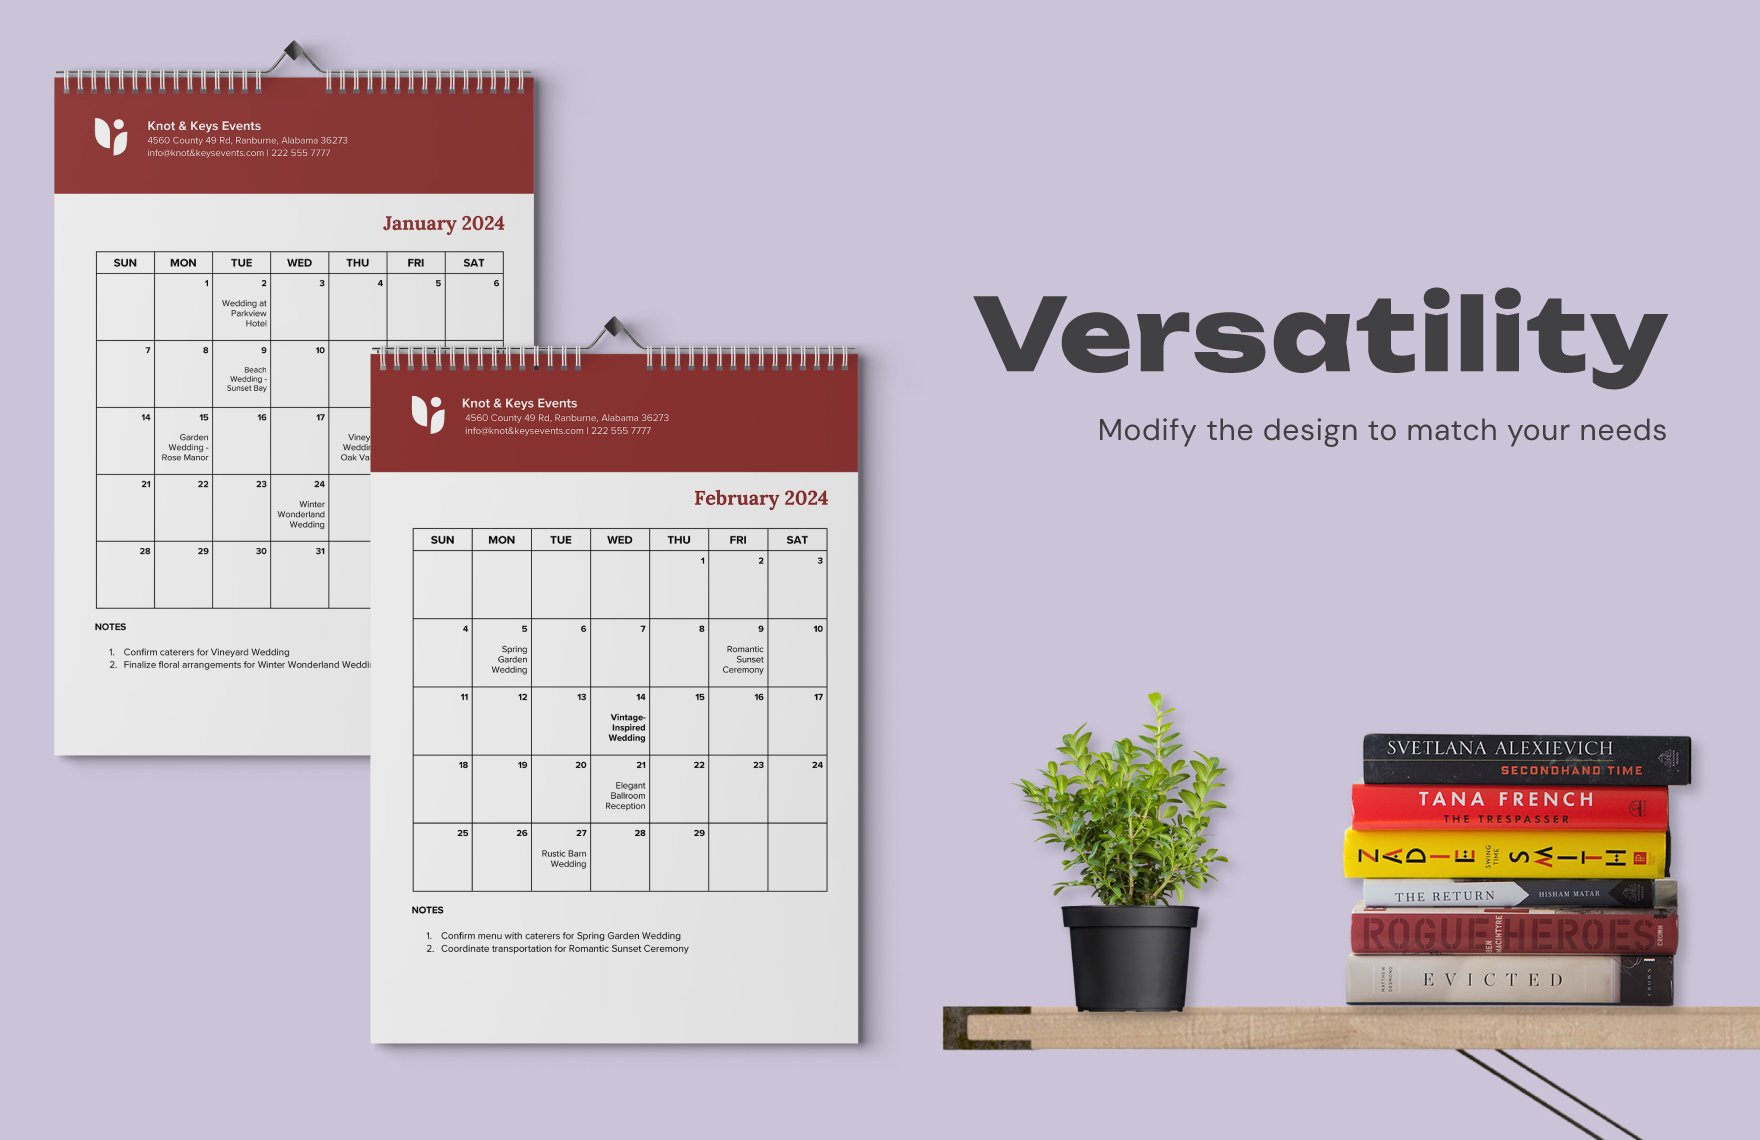 30+ Ultimate Calendar Template Bundle